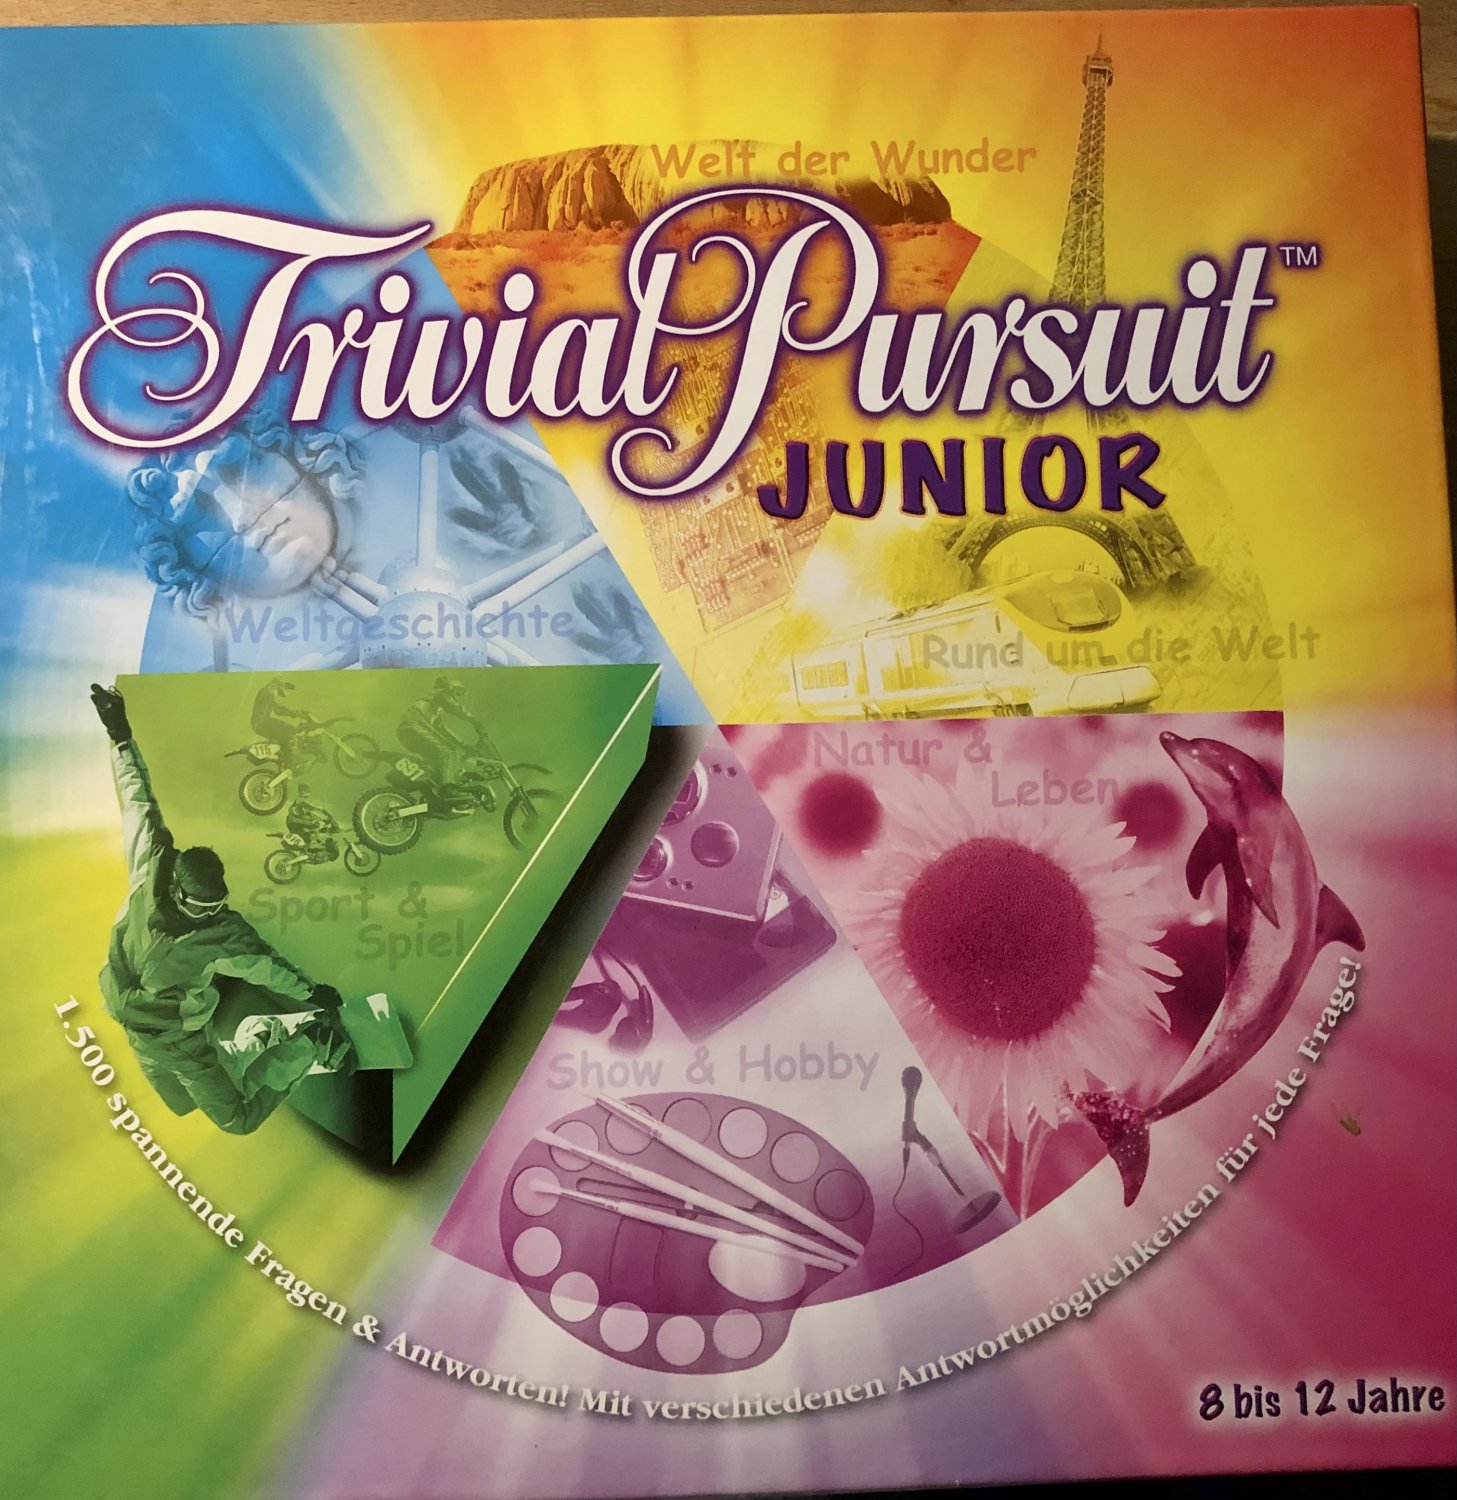 Trivial pursuit édition junior - Parker